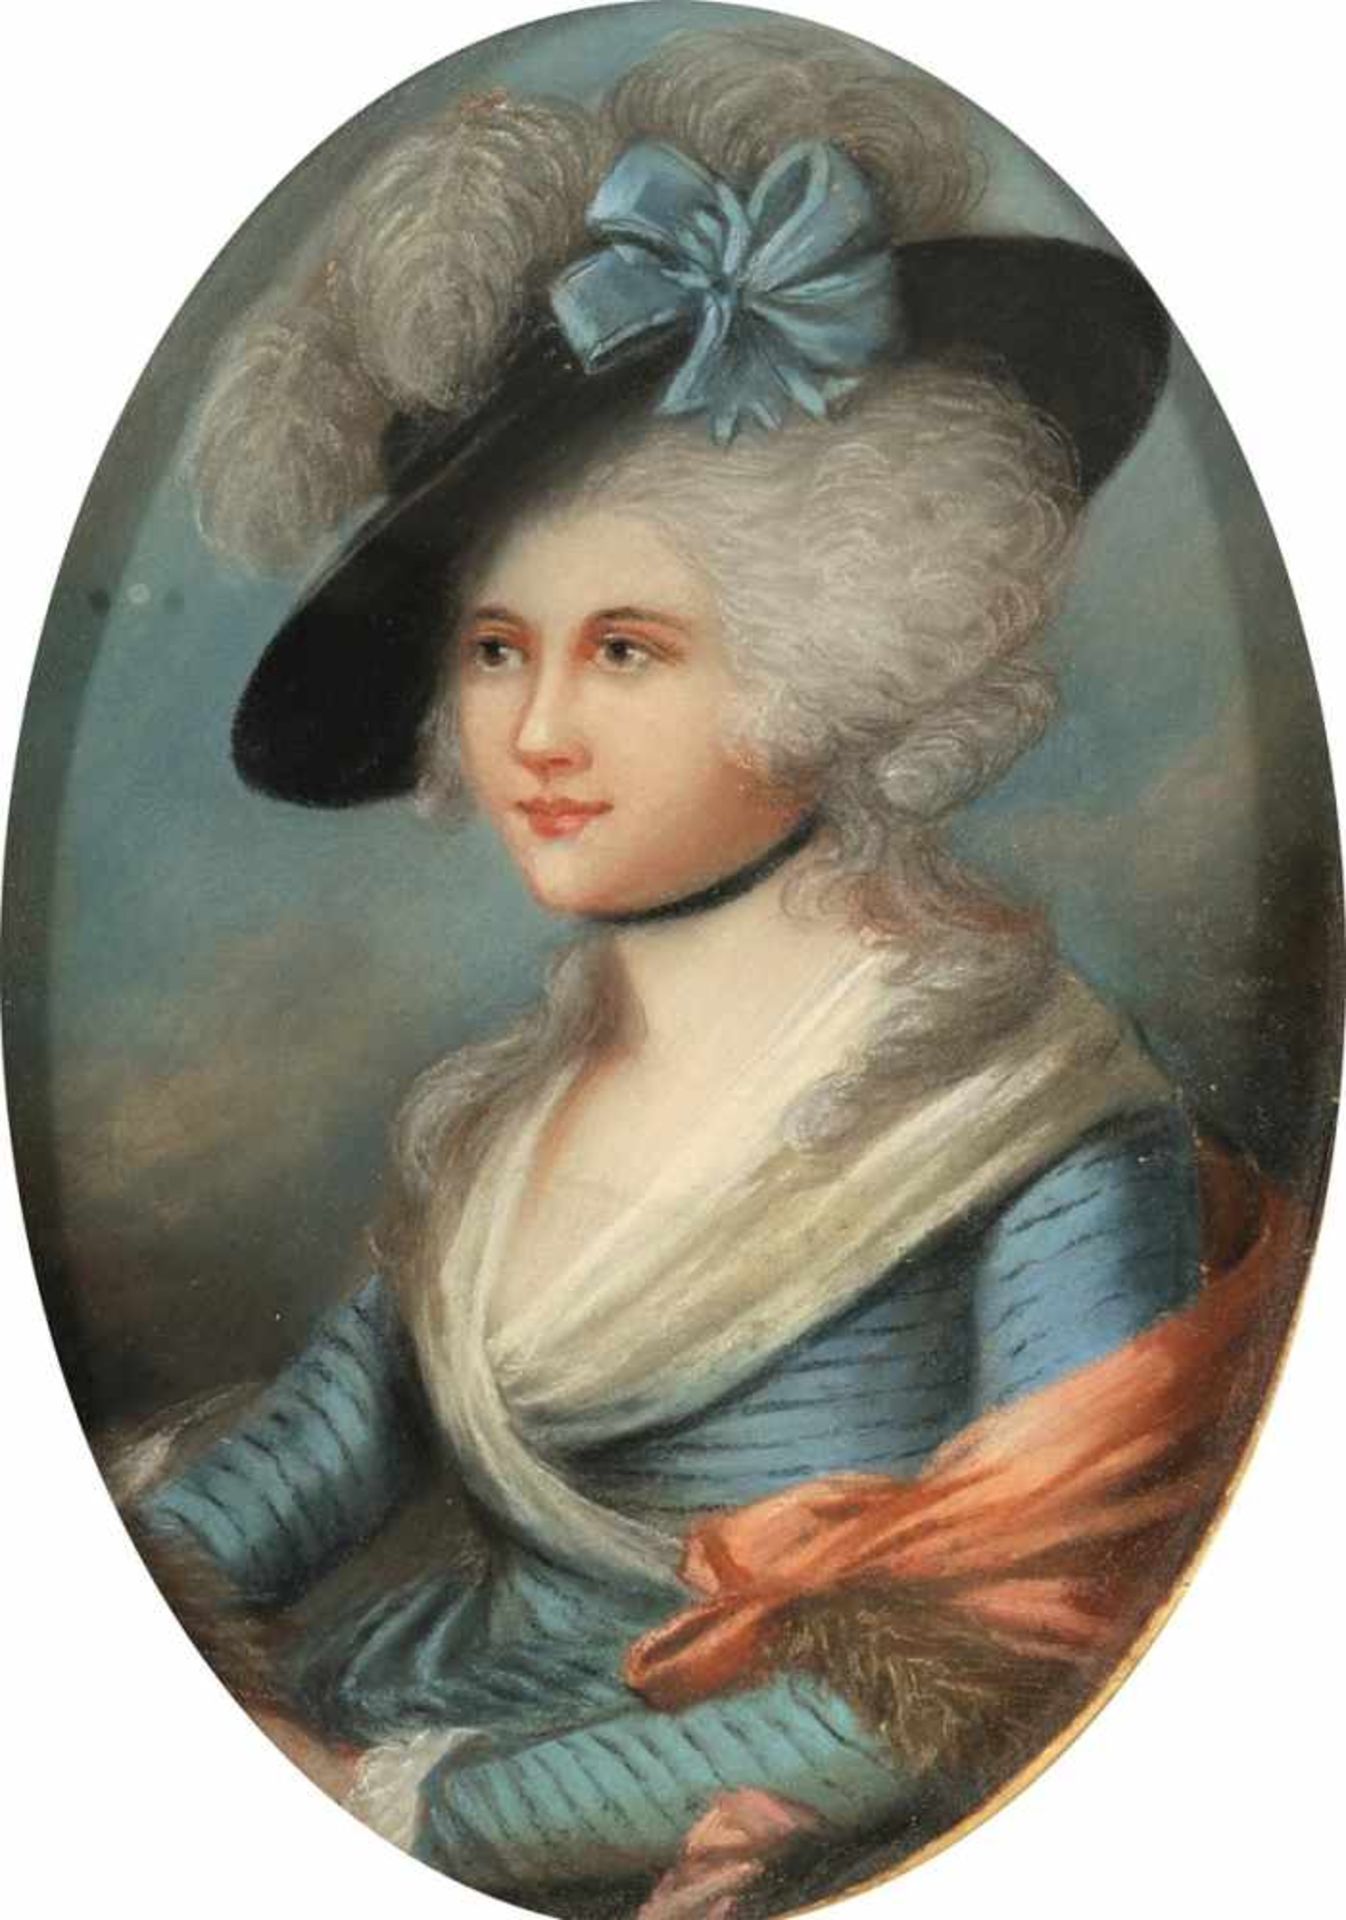 Bildnismaler des 18. Jahrhunderts - Vornehme Dame mit Hut - Pastell. 30,2 x 21 cm (oval).